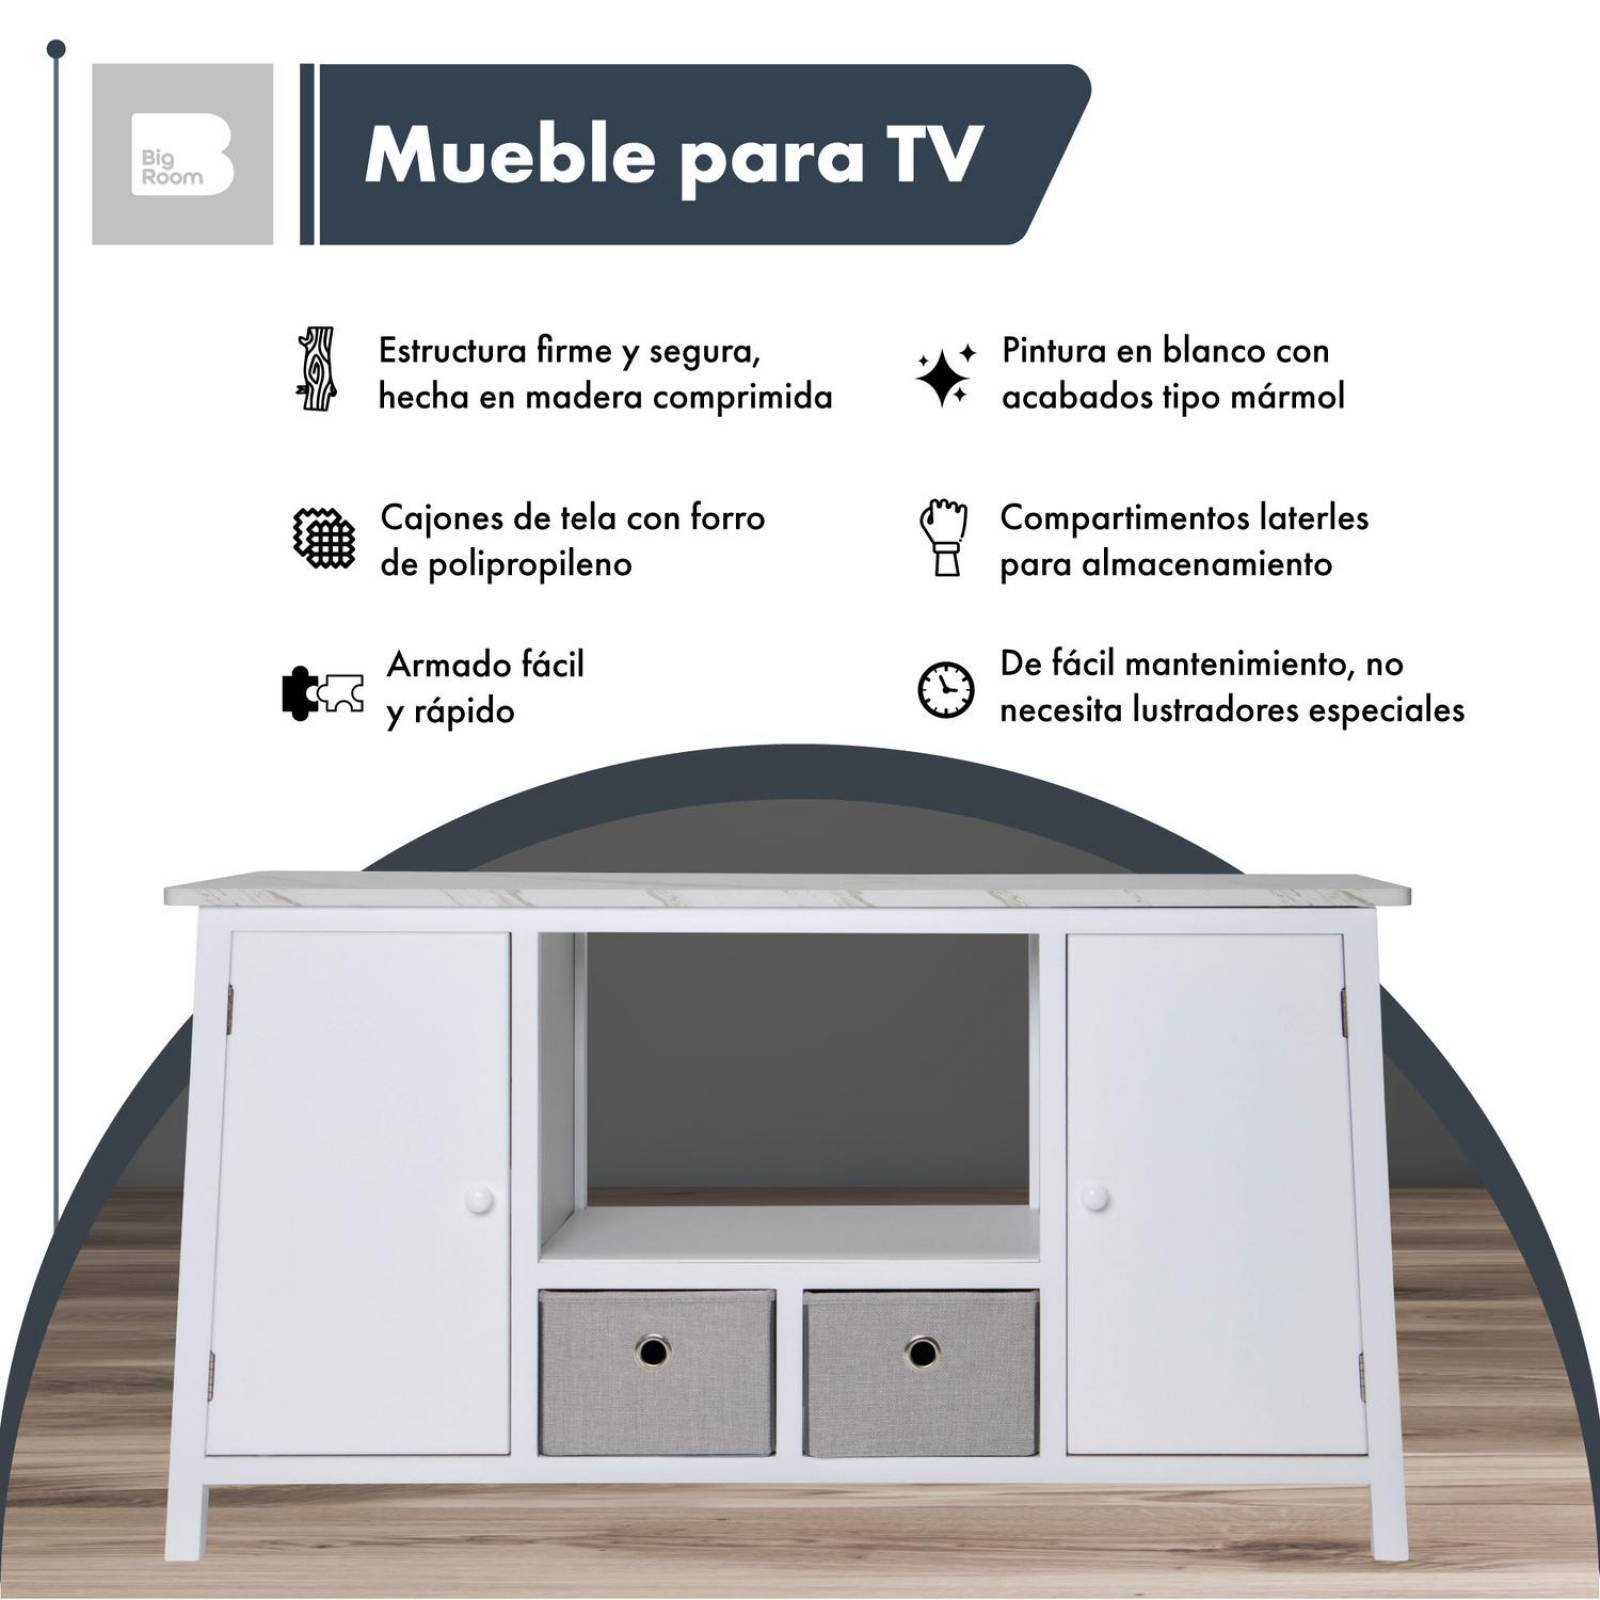 Mueble Para TV De Madera Comoda Cajonera Tela Repisas Hogar Blanco